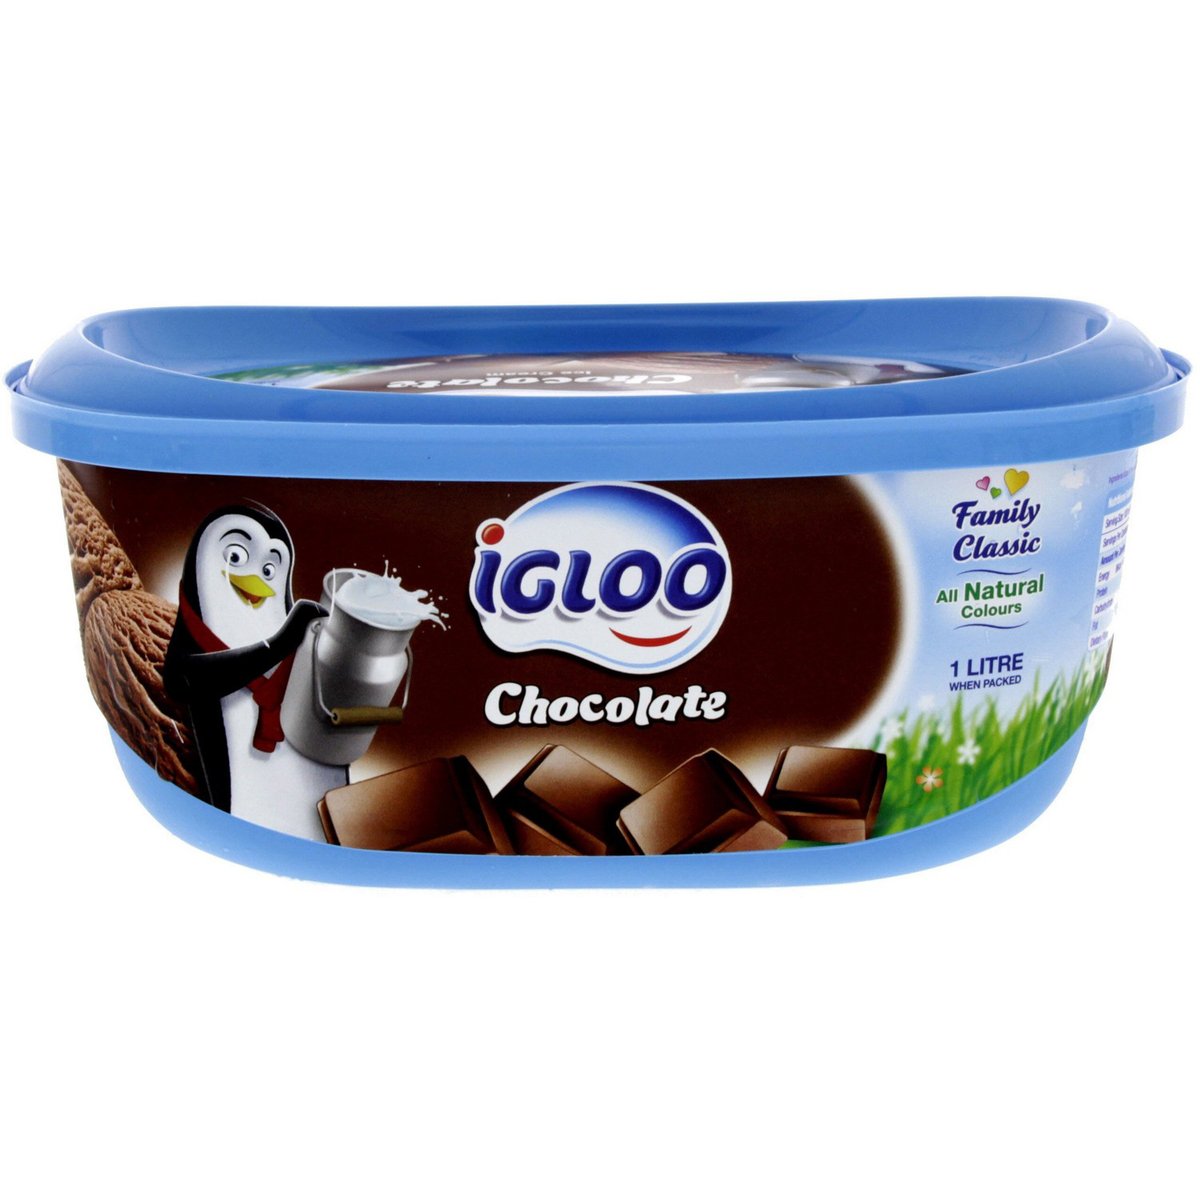 اشتري قم بشراء آيس كريم شوكولاتة إيجلو 1 لتر Online at Best Price من الموقع - من لولو هايبر ماركت Ice Cream Take Home في الامارات